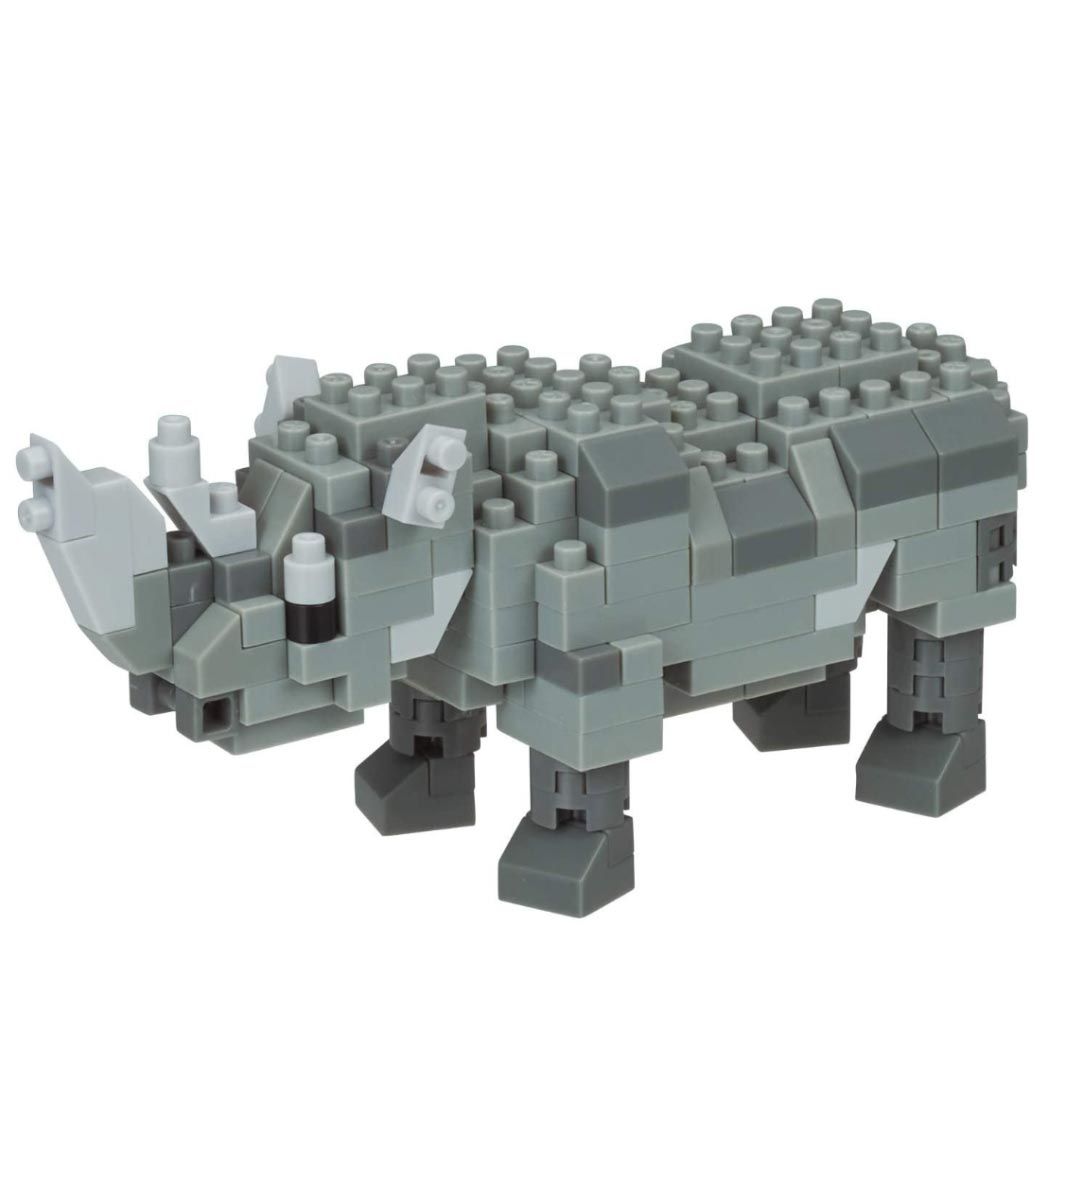 Nanoblock - Rhinoceros - NBC 308